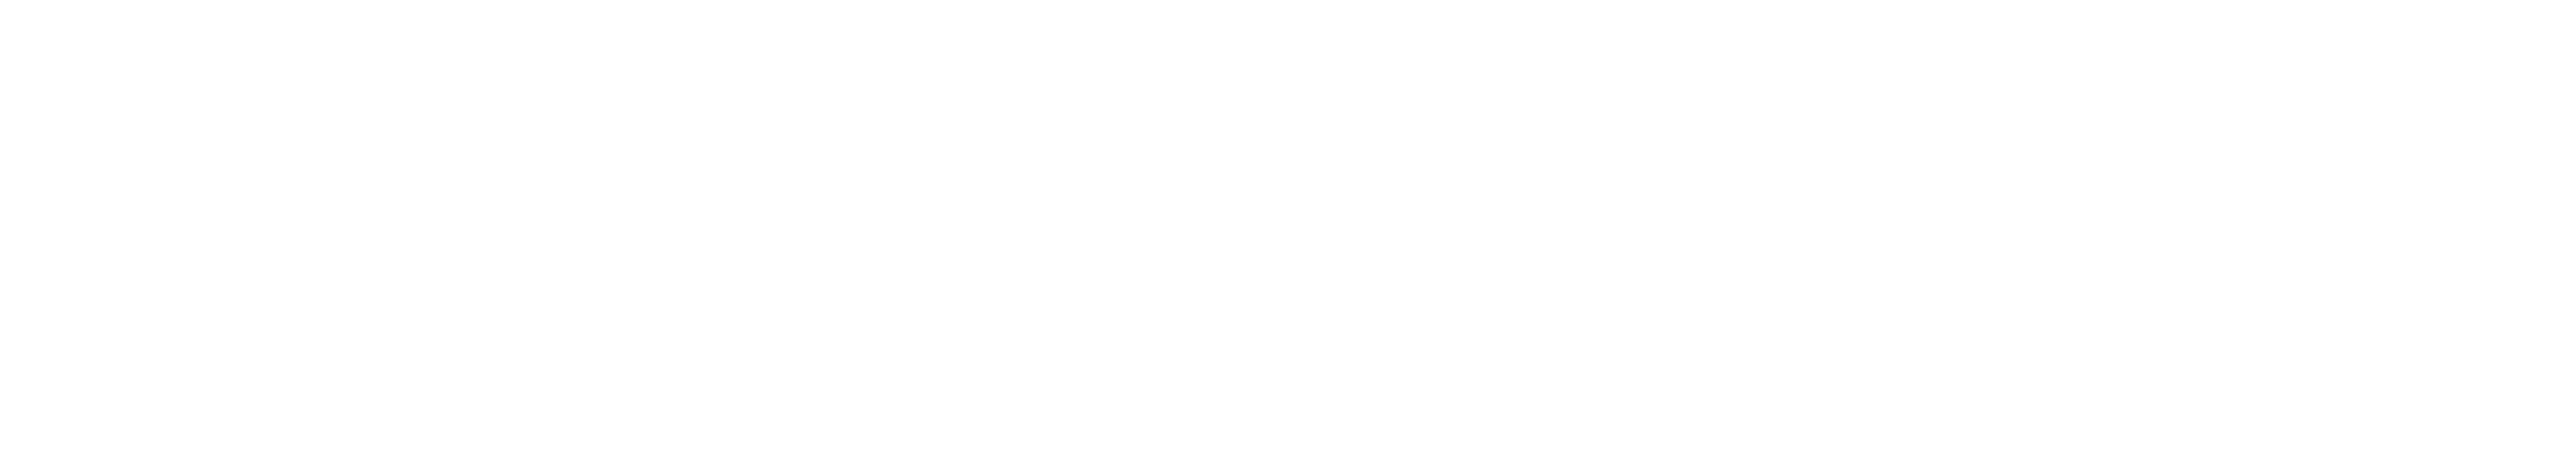 logo abbaye Saint-wandrille